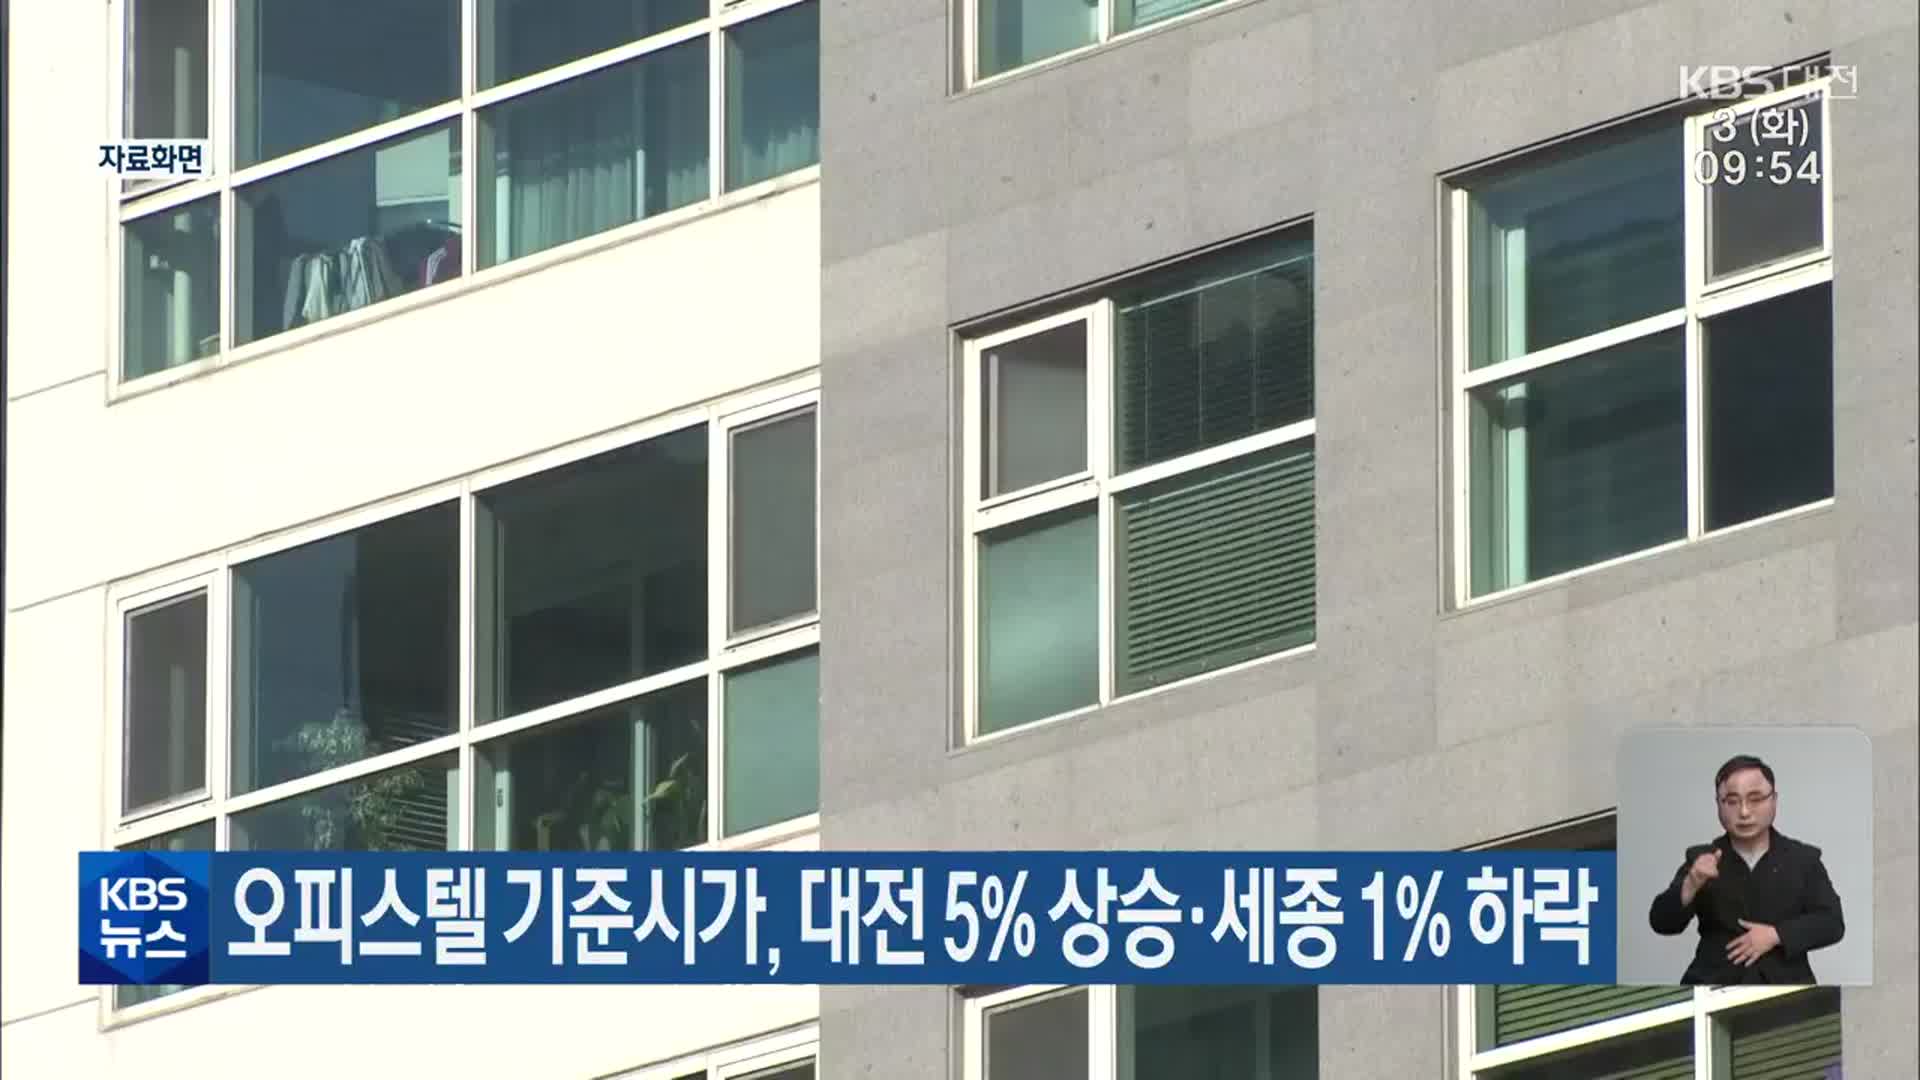 오피스텔 기준시가, 대전 5% 상승·세종 1% 하락